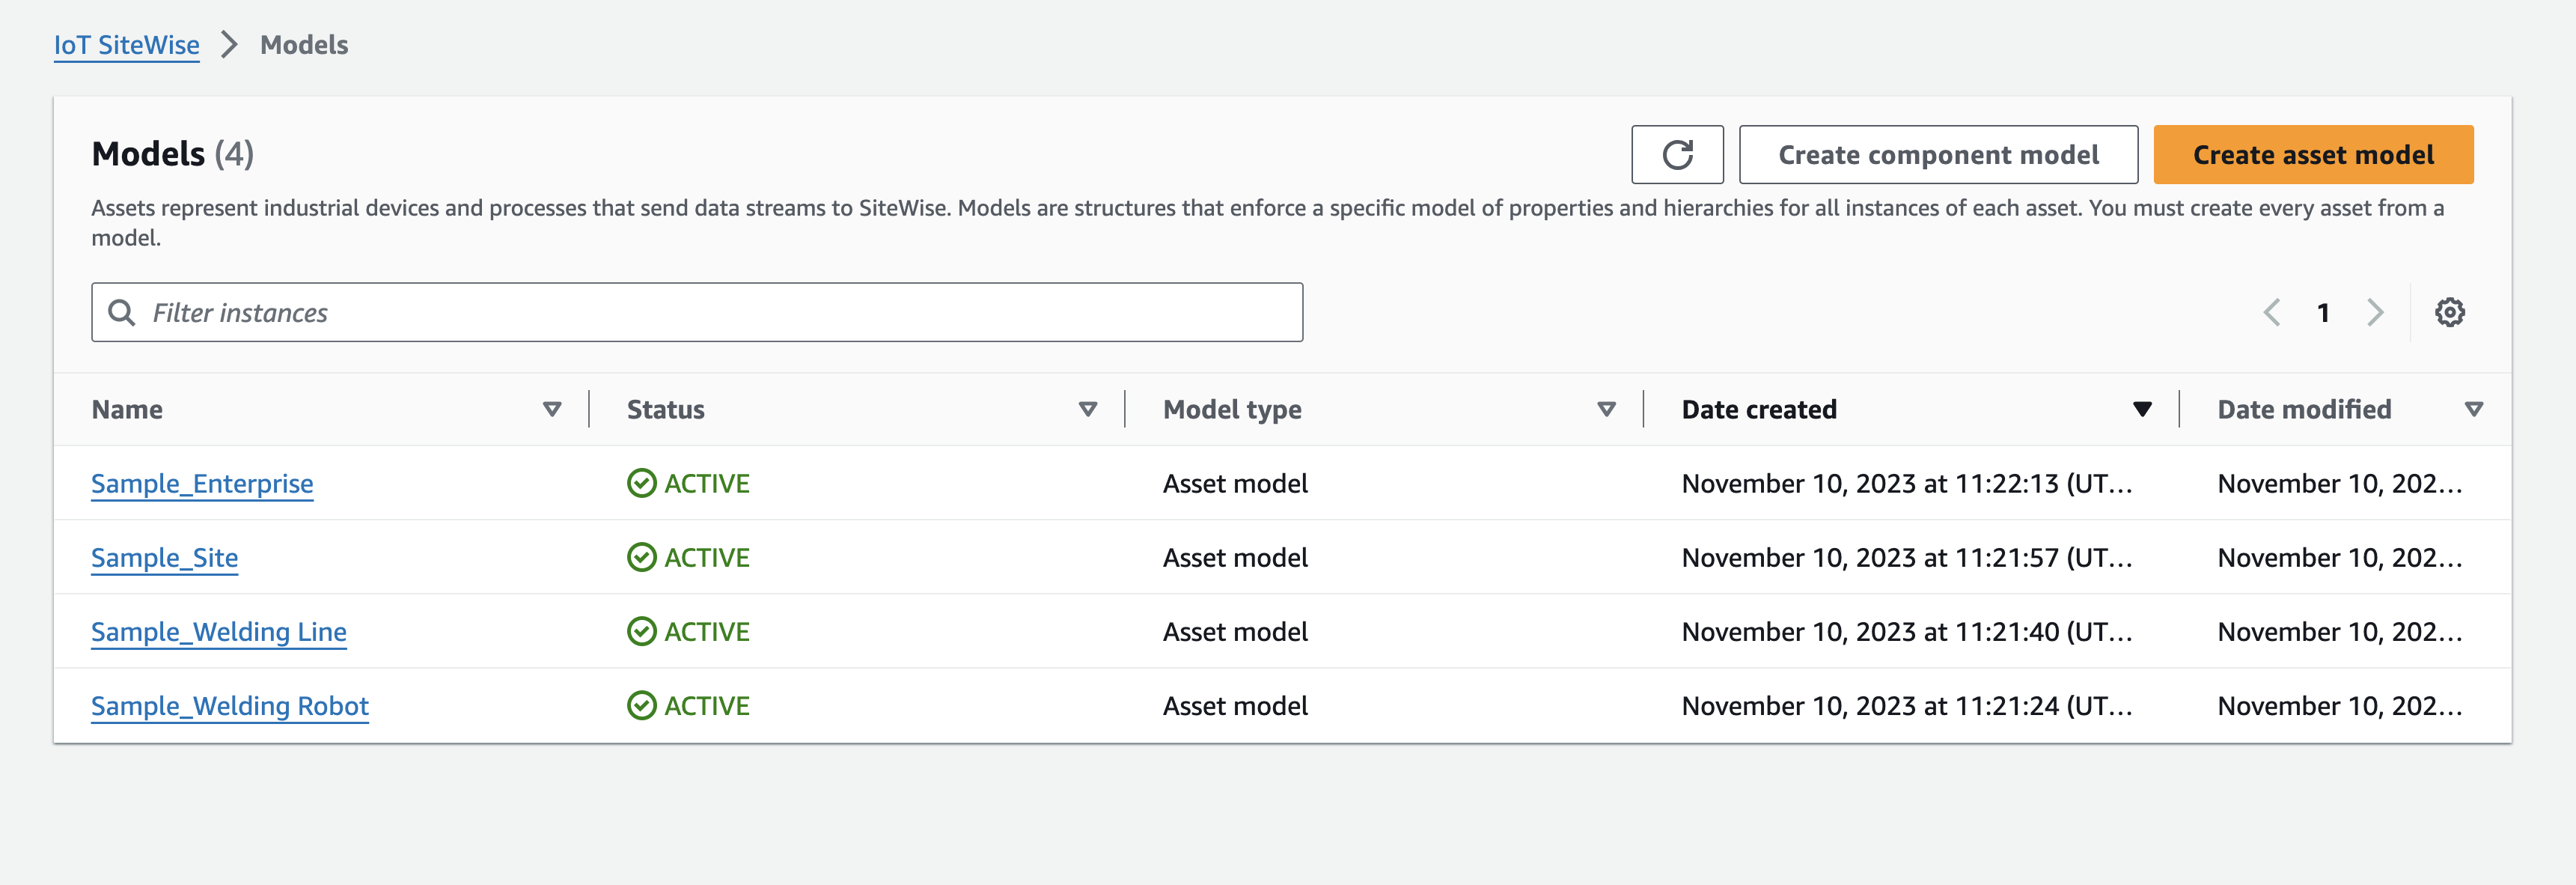 AWS IoT SiteWise modelos con activos y modelos de activos.